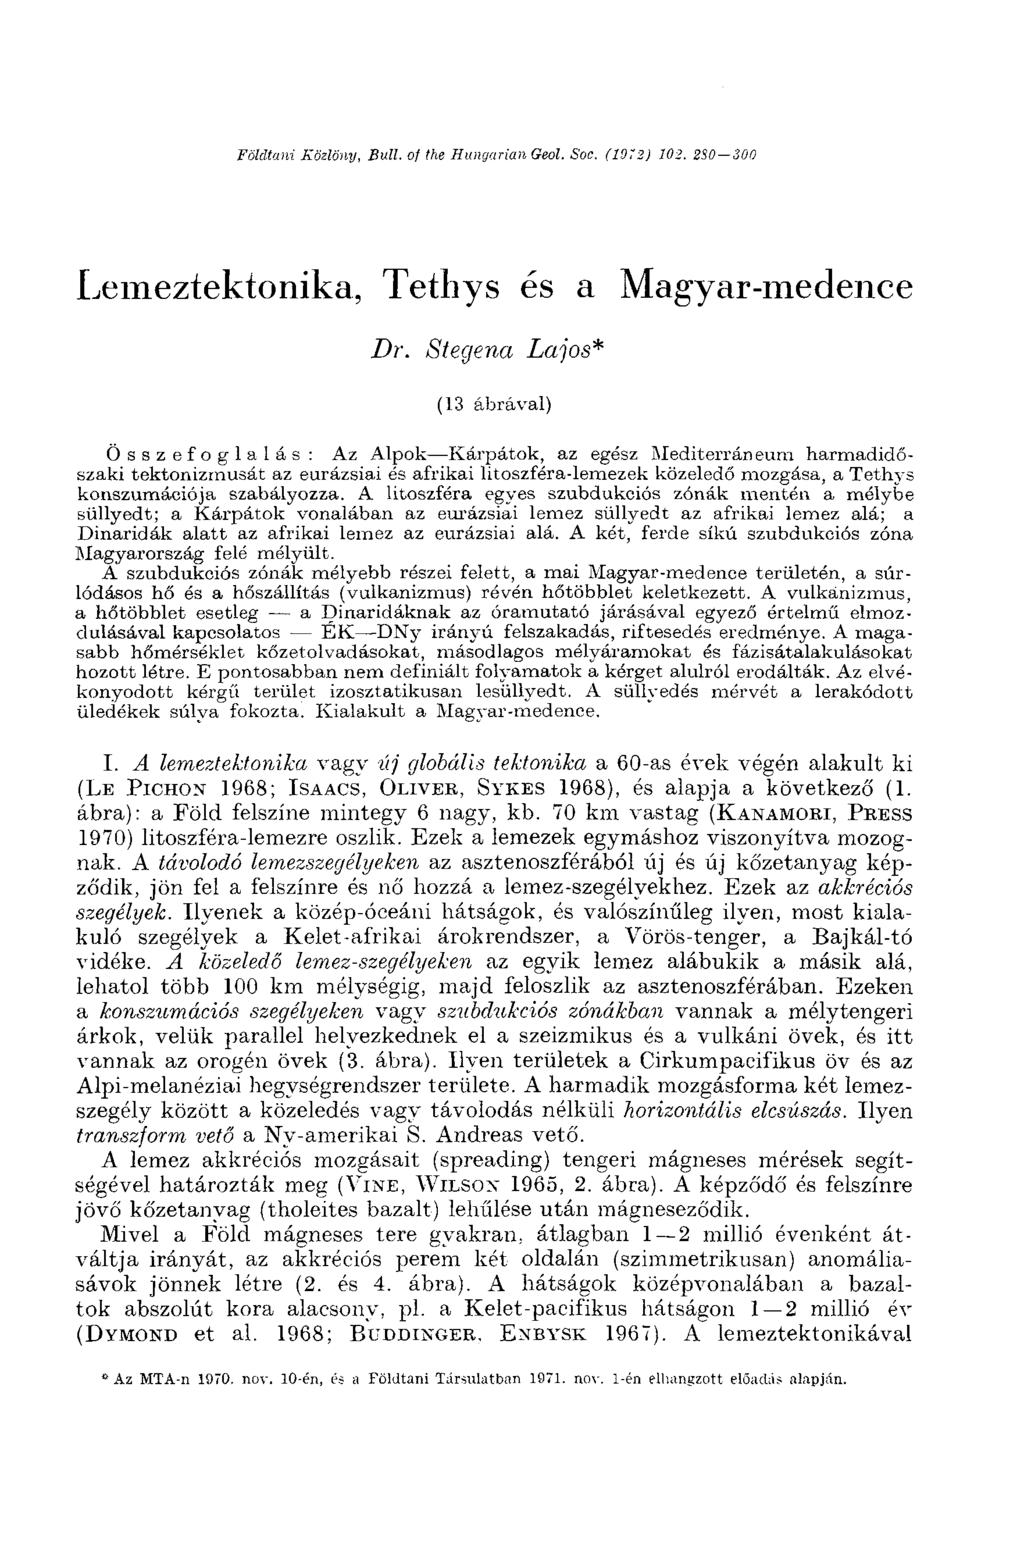 Földtani Közlöny, Bull, of the Hungarian Geol. Soc. (1072) 102. 2S0-300 Lemeztektonika, Tetbys és a Magyar-medence Dr.